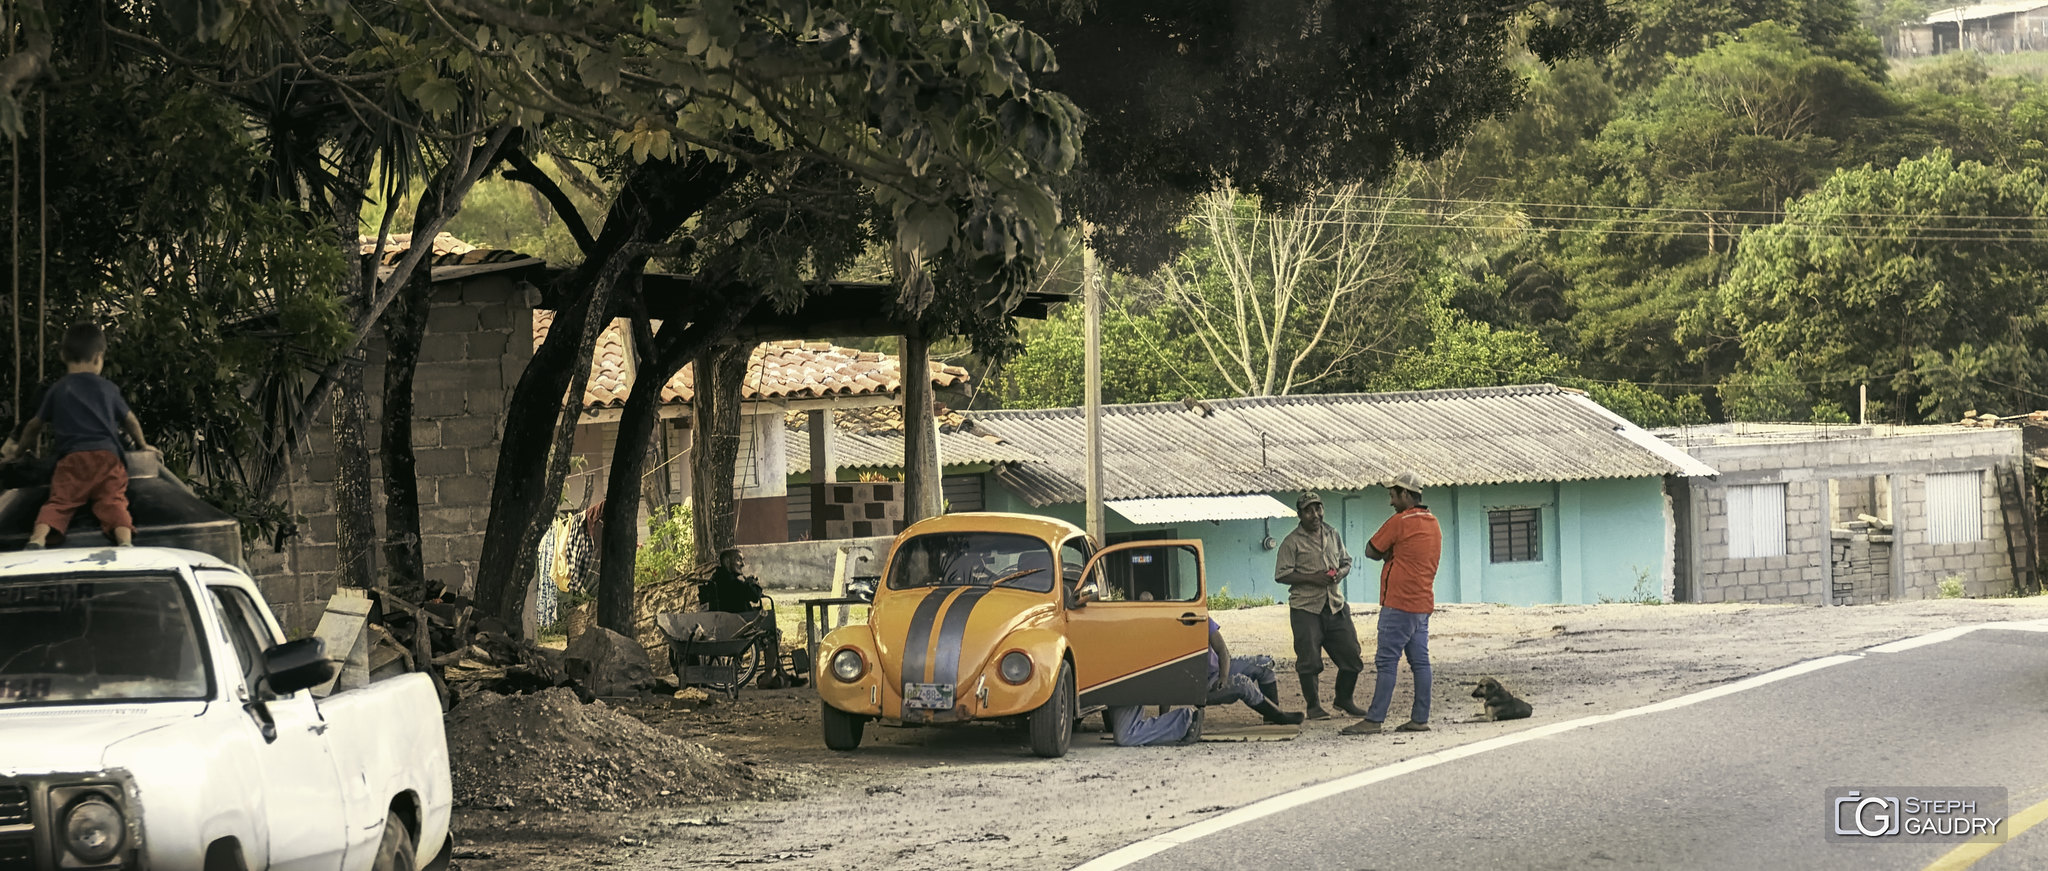 Coccinelle orange le long de la route de Desplayado (MEX) [Click to start slideshow]